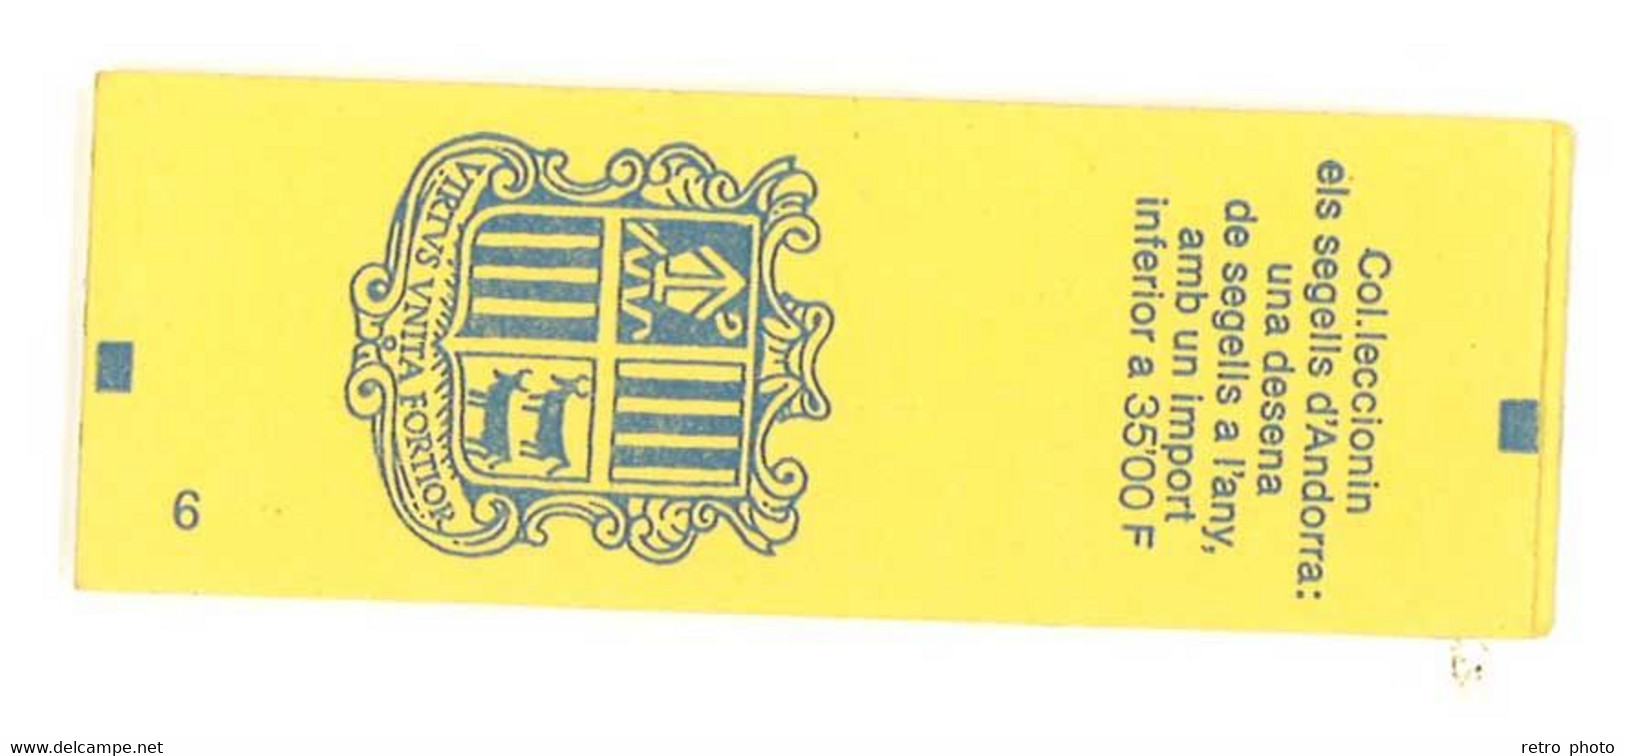 Carnet Andorre / Principat D'Andorra, 10 Timbres à 2,50 Francs N° 409 YT - Postzegelboekjes